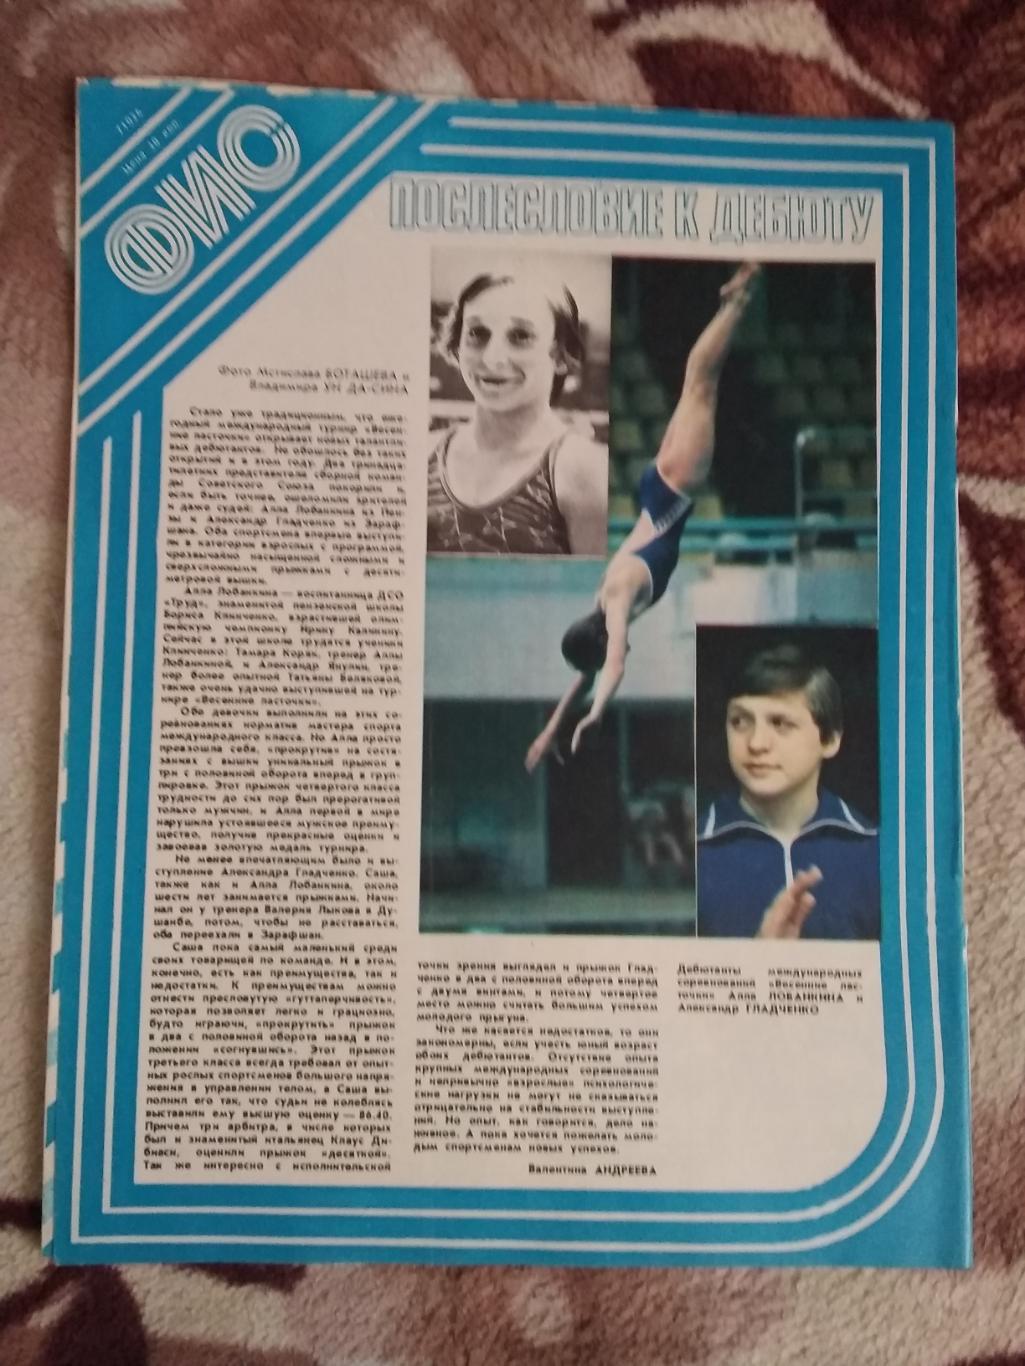 Журнал.Физкультура и спорт № 7 1981 г. (ФиС). 2